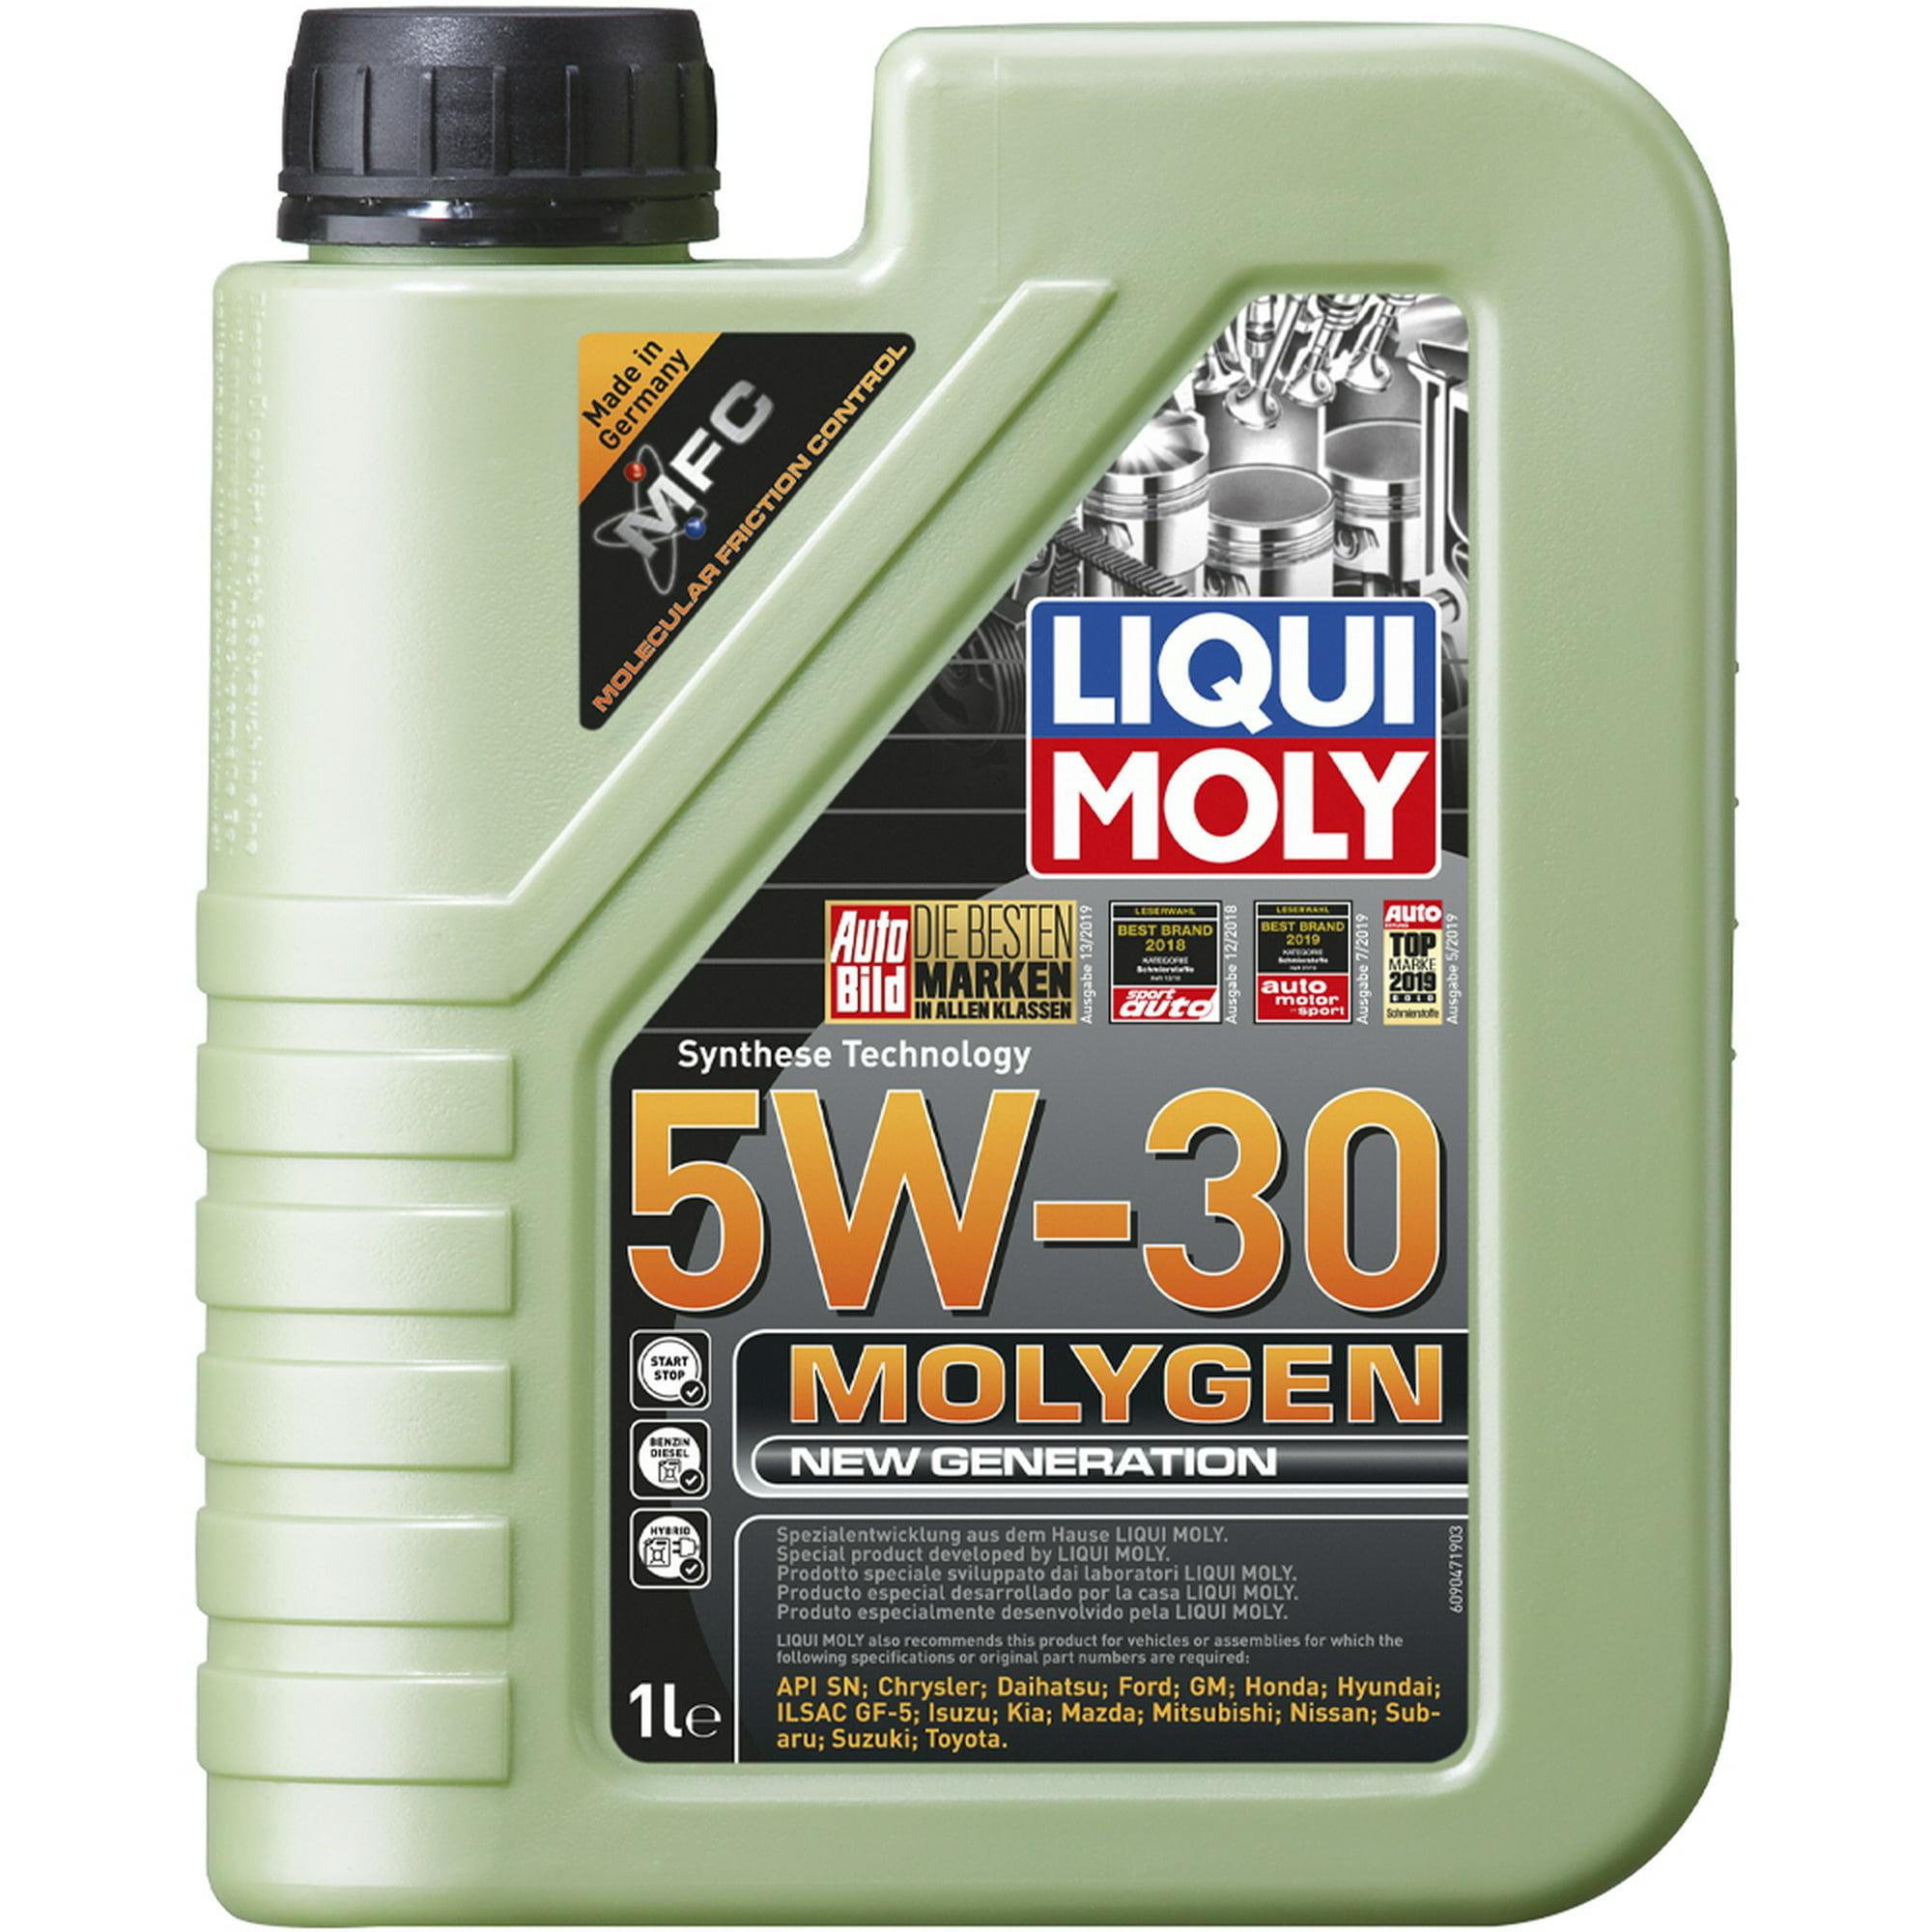 Molygen 5w30 1l aceite sintético antifriccionante tungsteno liqui moly .